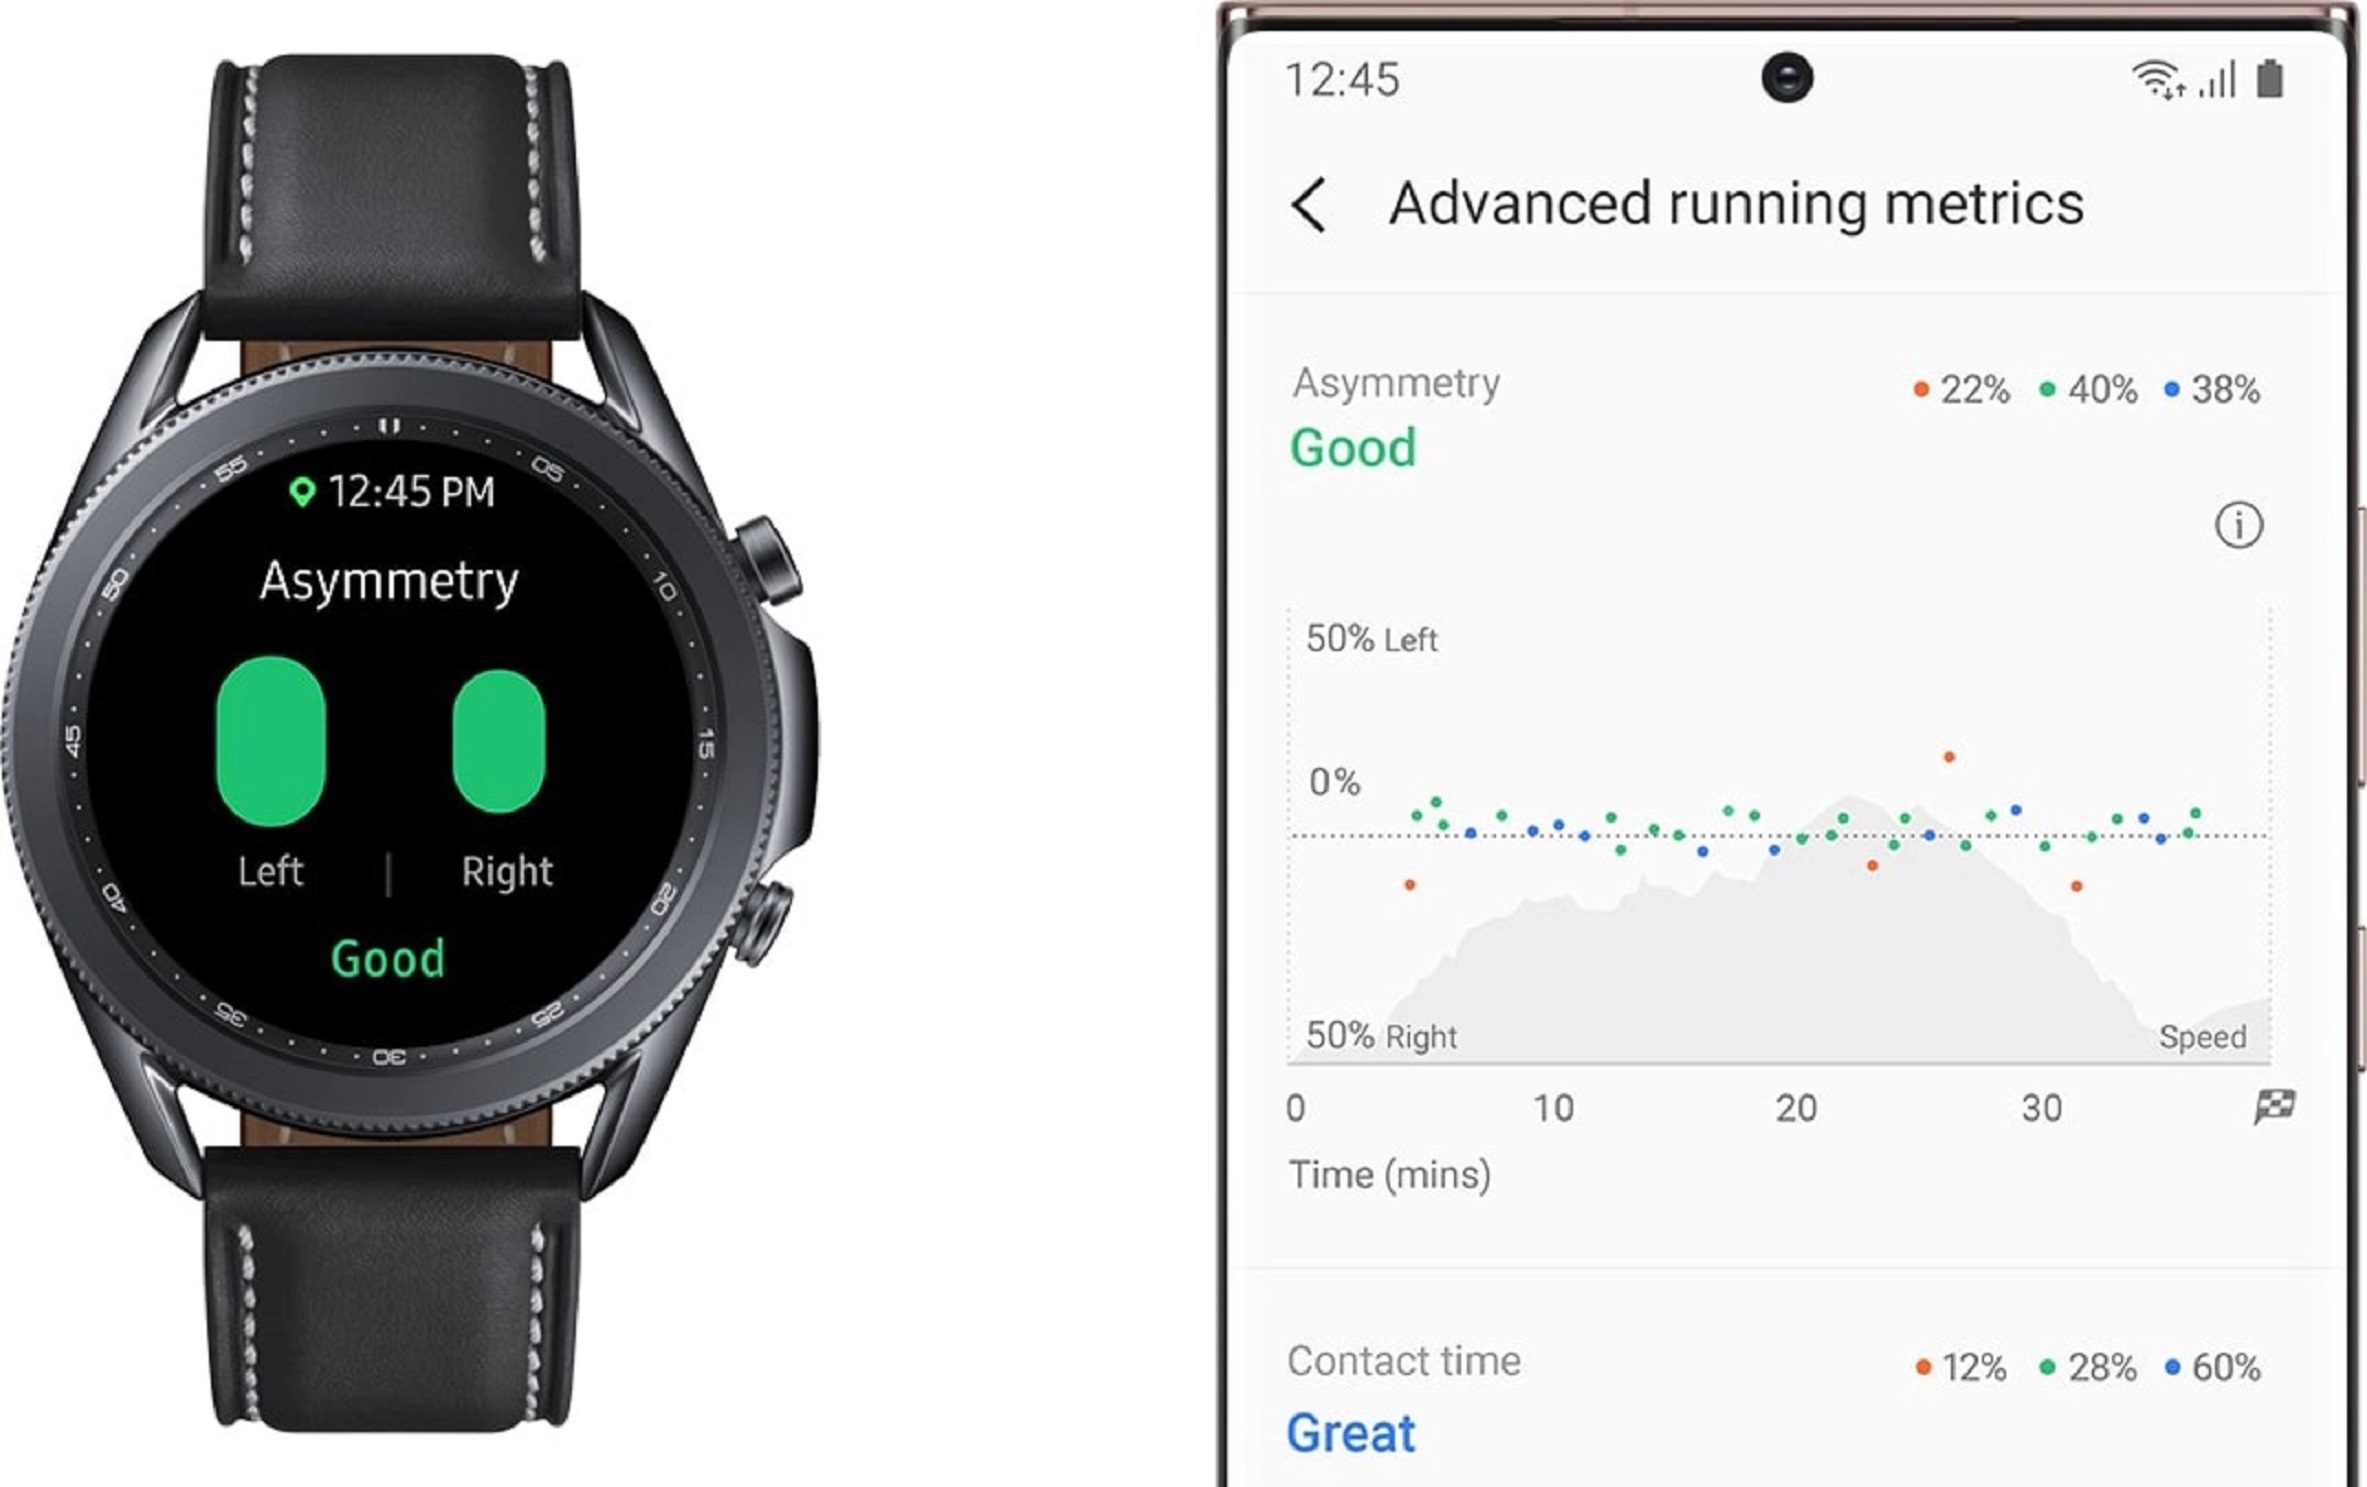 โลกใหม่ของ Wearable กับ One UI Watch ใส่ความฉลาดบนนาฬิกา ลงแอปบนนาฬิกาได้ แบตอยู่ได้นานขึ้น ตกแต่งหน้าปัดได้เอง